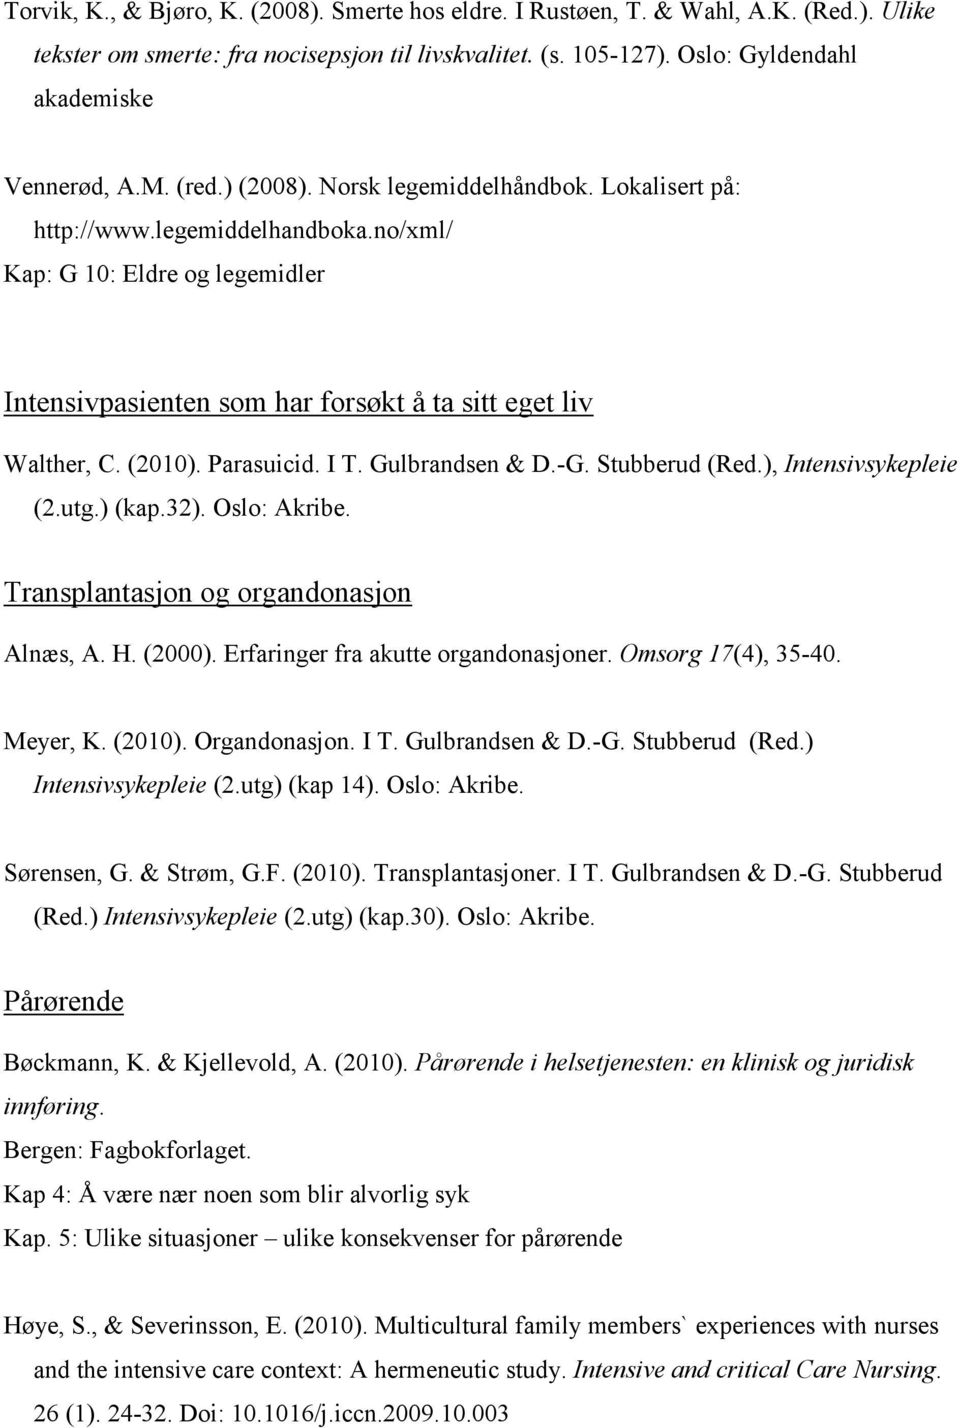 Parasuicid. I T. Gulbrandsen & D.-G. Stubberud (Red.), Intensivsykepleie (2.utg.) (kap.32). Oslo: Akribe. Transplantasjon og organdonasjon Alnæs, A. H. (2000). Erfaringer fra akutte organdonasjoner.